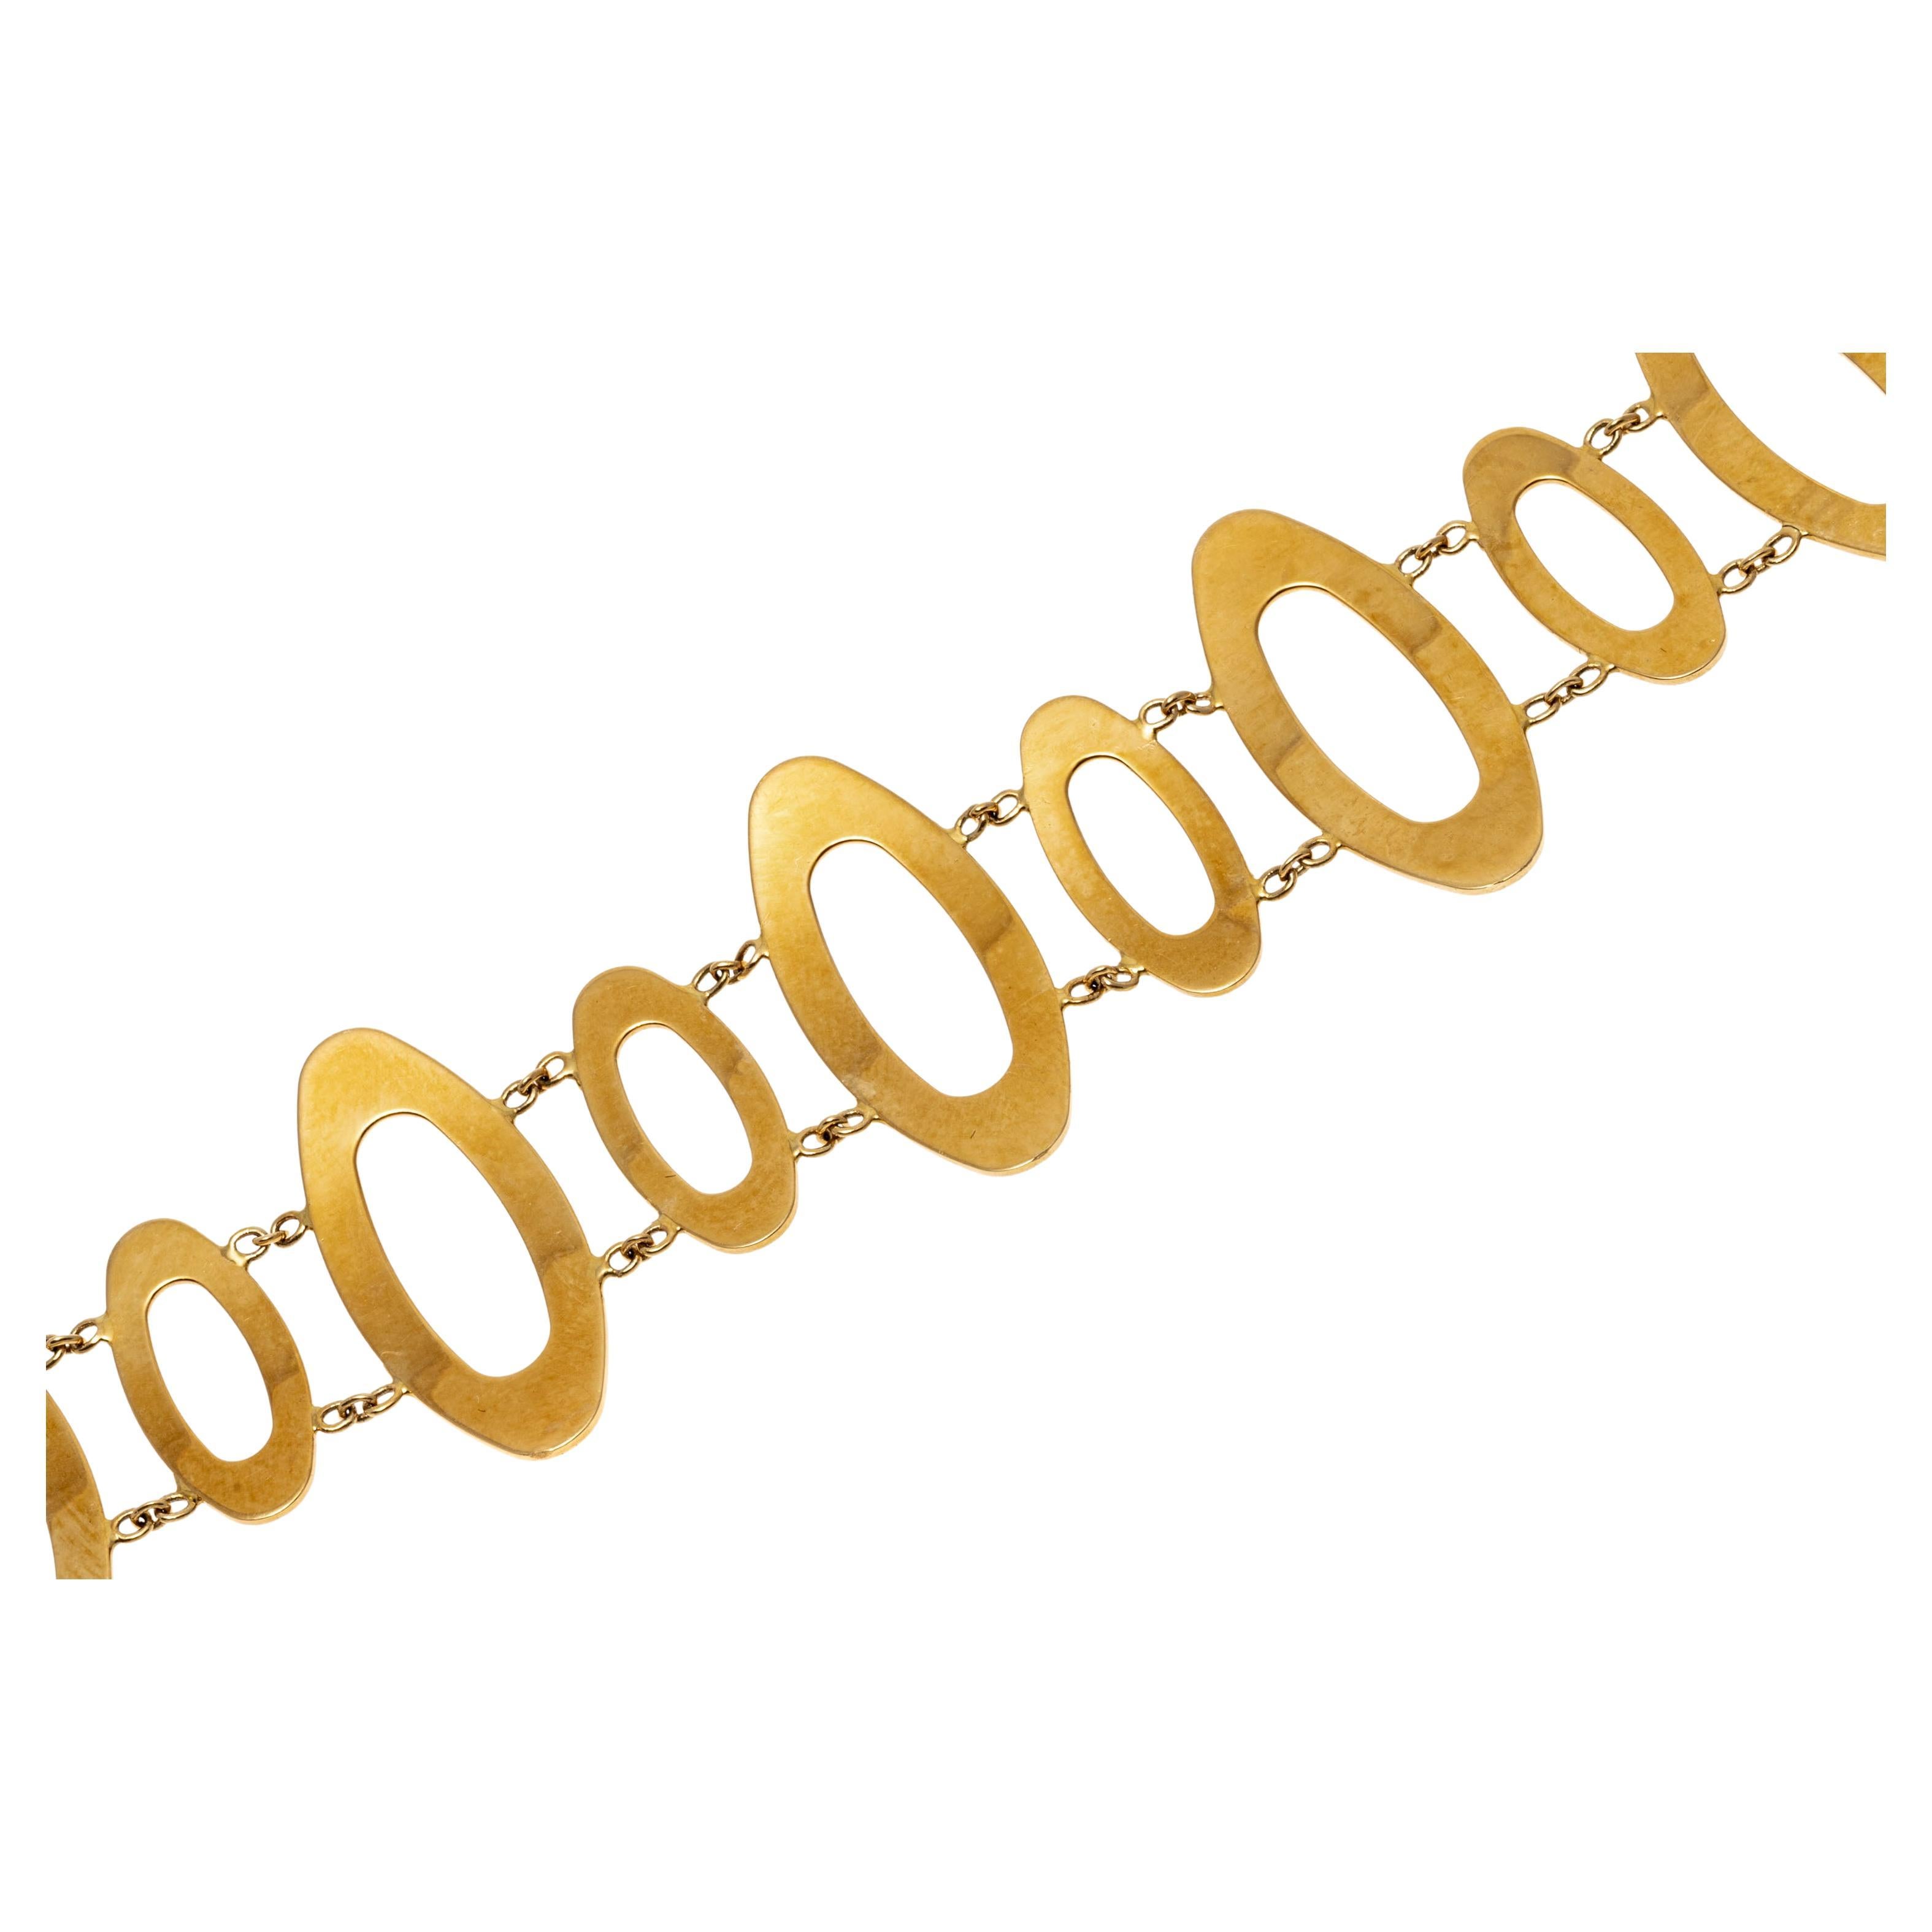 Avec un design contemporain, ce bracelet élégant présente des maillons ovales allongés en or jaune 18K poli. Les maillons ovales sont disposés en alternance entre les grandes et les petites tailles. Le bracelet est doté d'un fermoir à épingle.